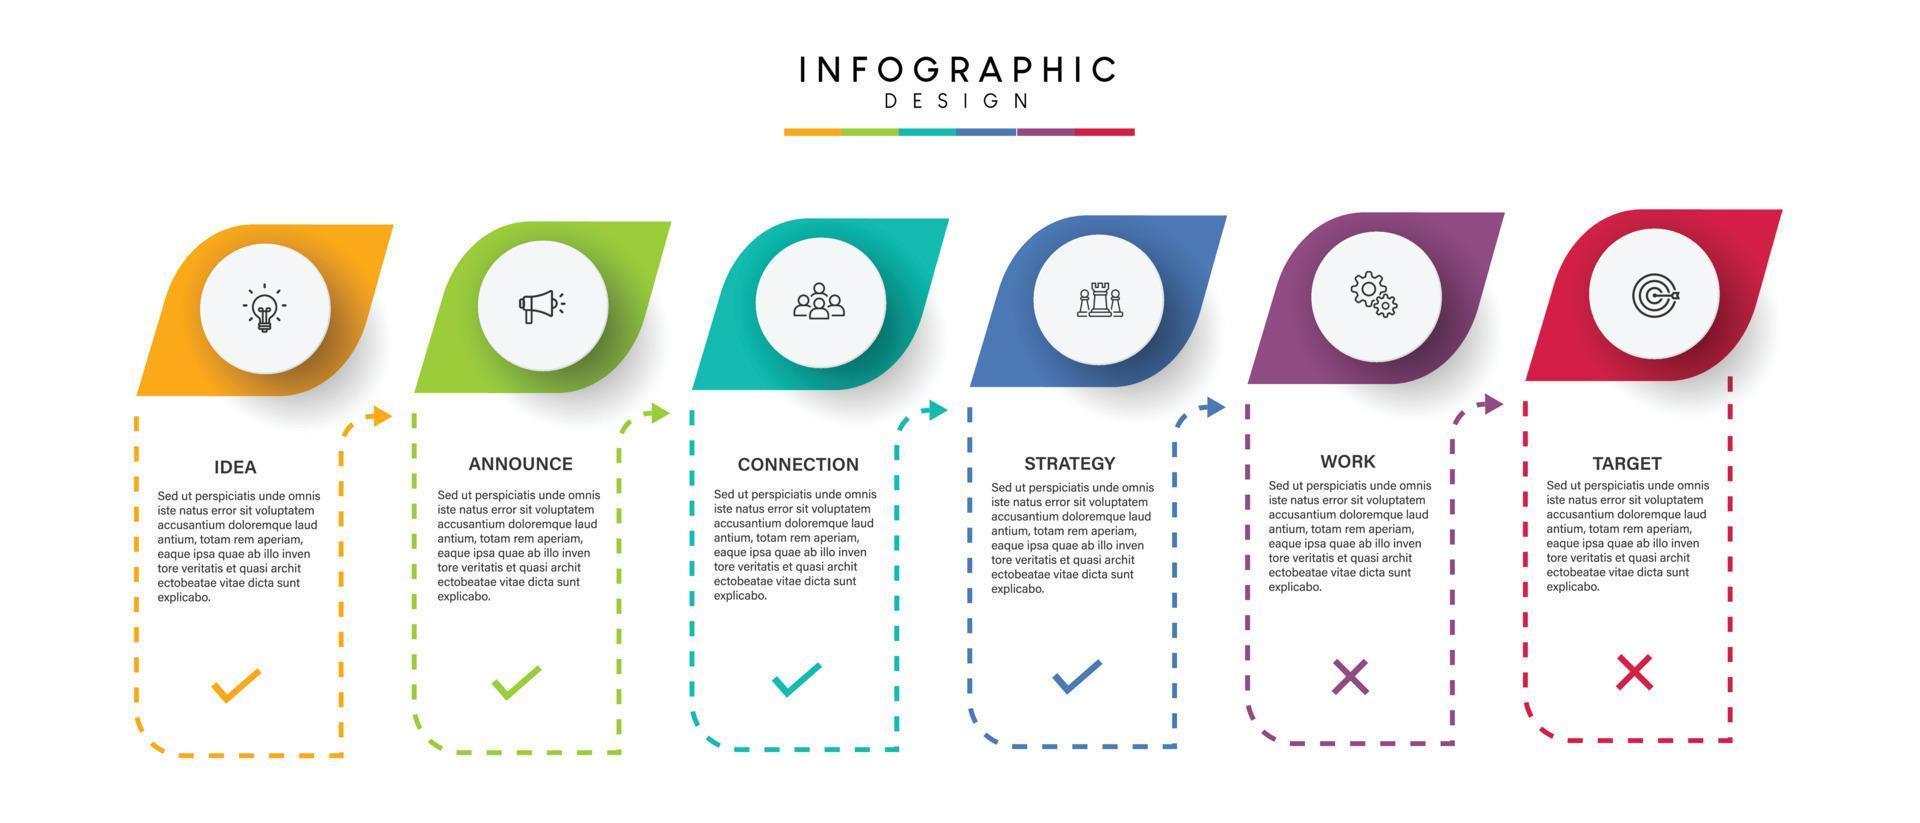 étapes de visualisation des données d'entreprise processus de chronologie conception de modèle infographique avec des icônes vecteur